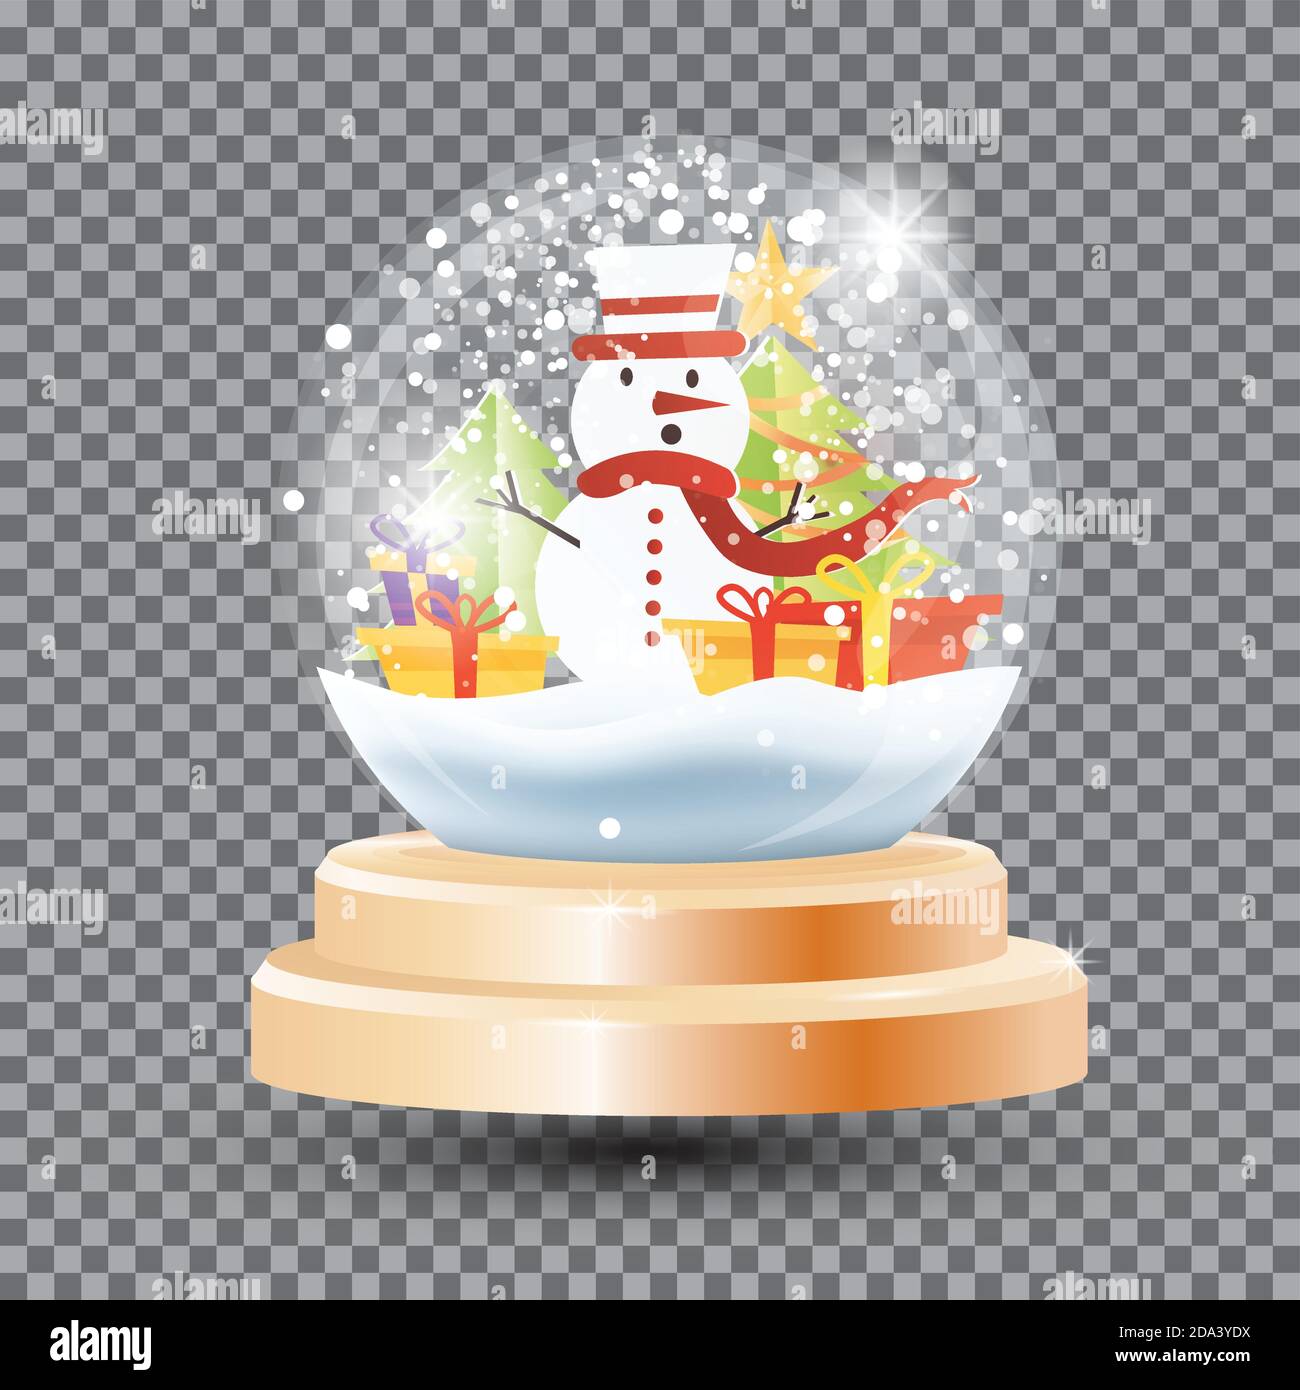 Magic Christmas Crystal Ball con Snowman, scatole regalo e Fir Tree. Illustrazione vettoriale. Palla da neve in vetro souvenir su griglia trasparente. Oggetto singolo. Illustrazione Vettoriale